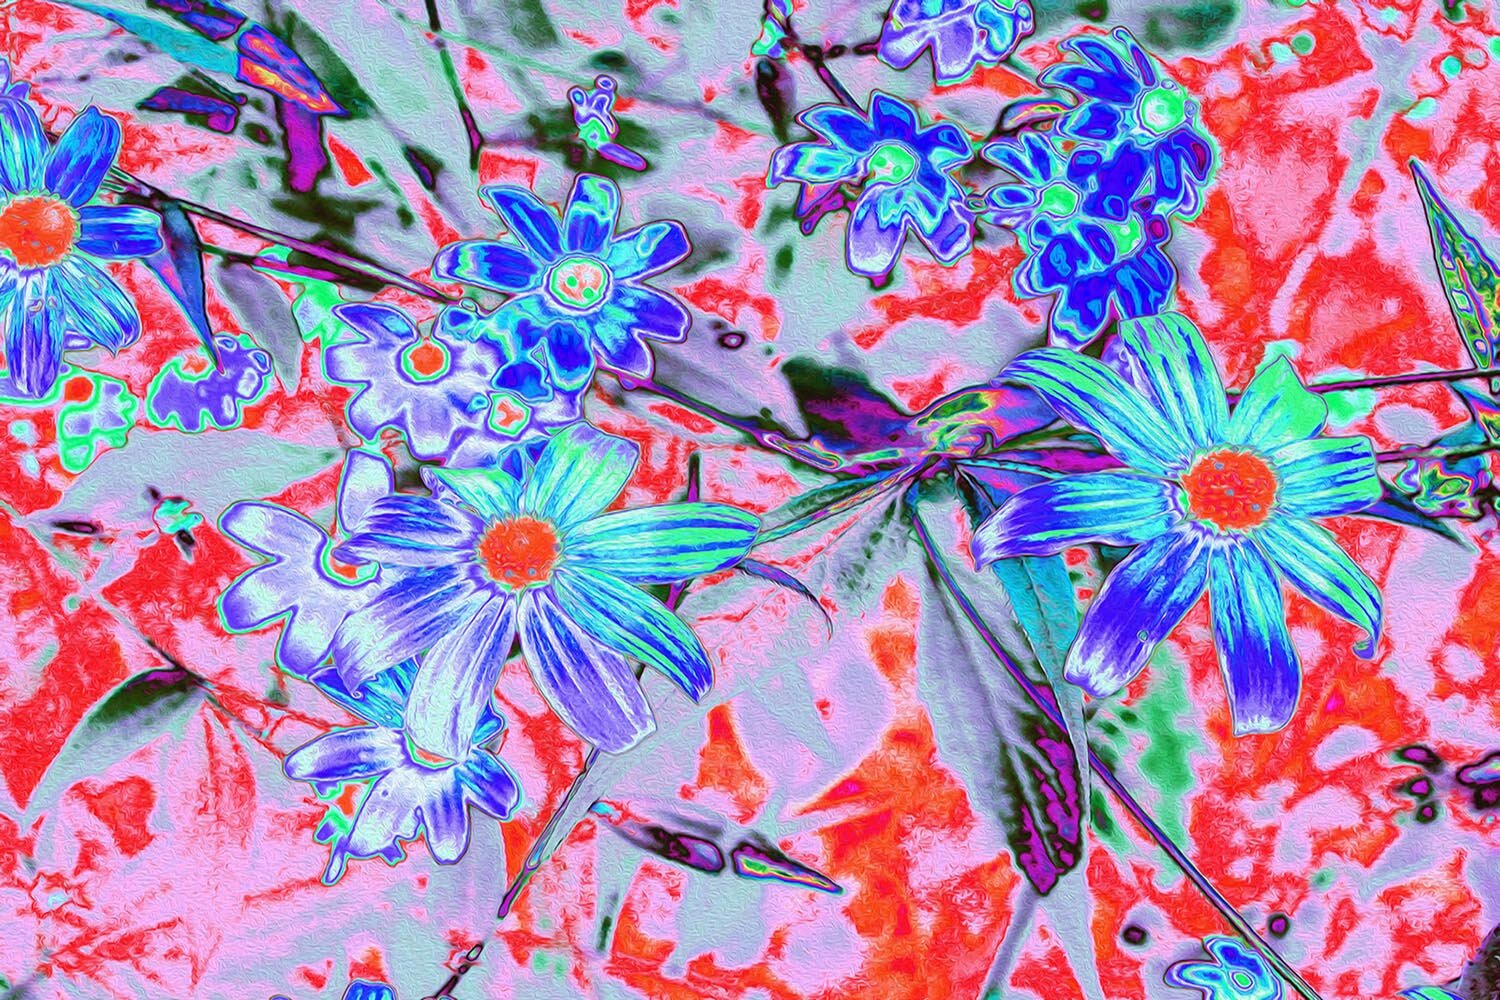 Retro Psychedelic Aqua and Orange Flowers